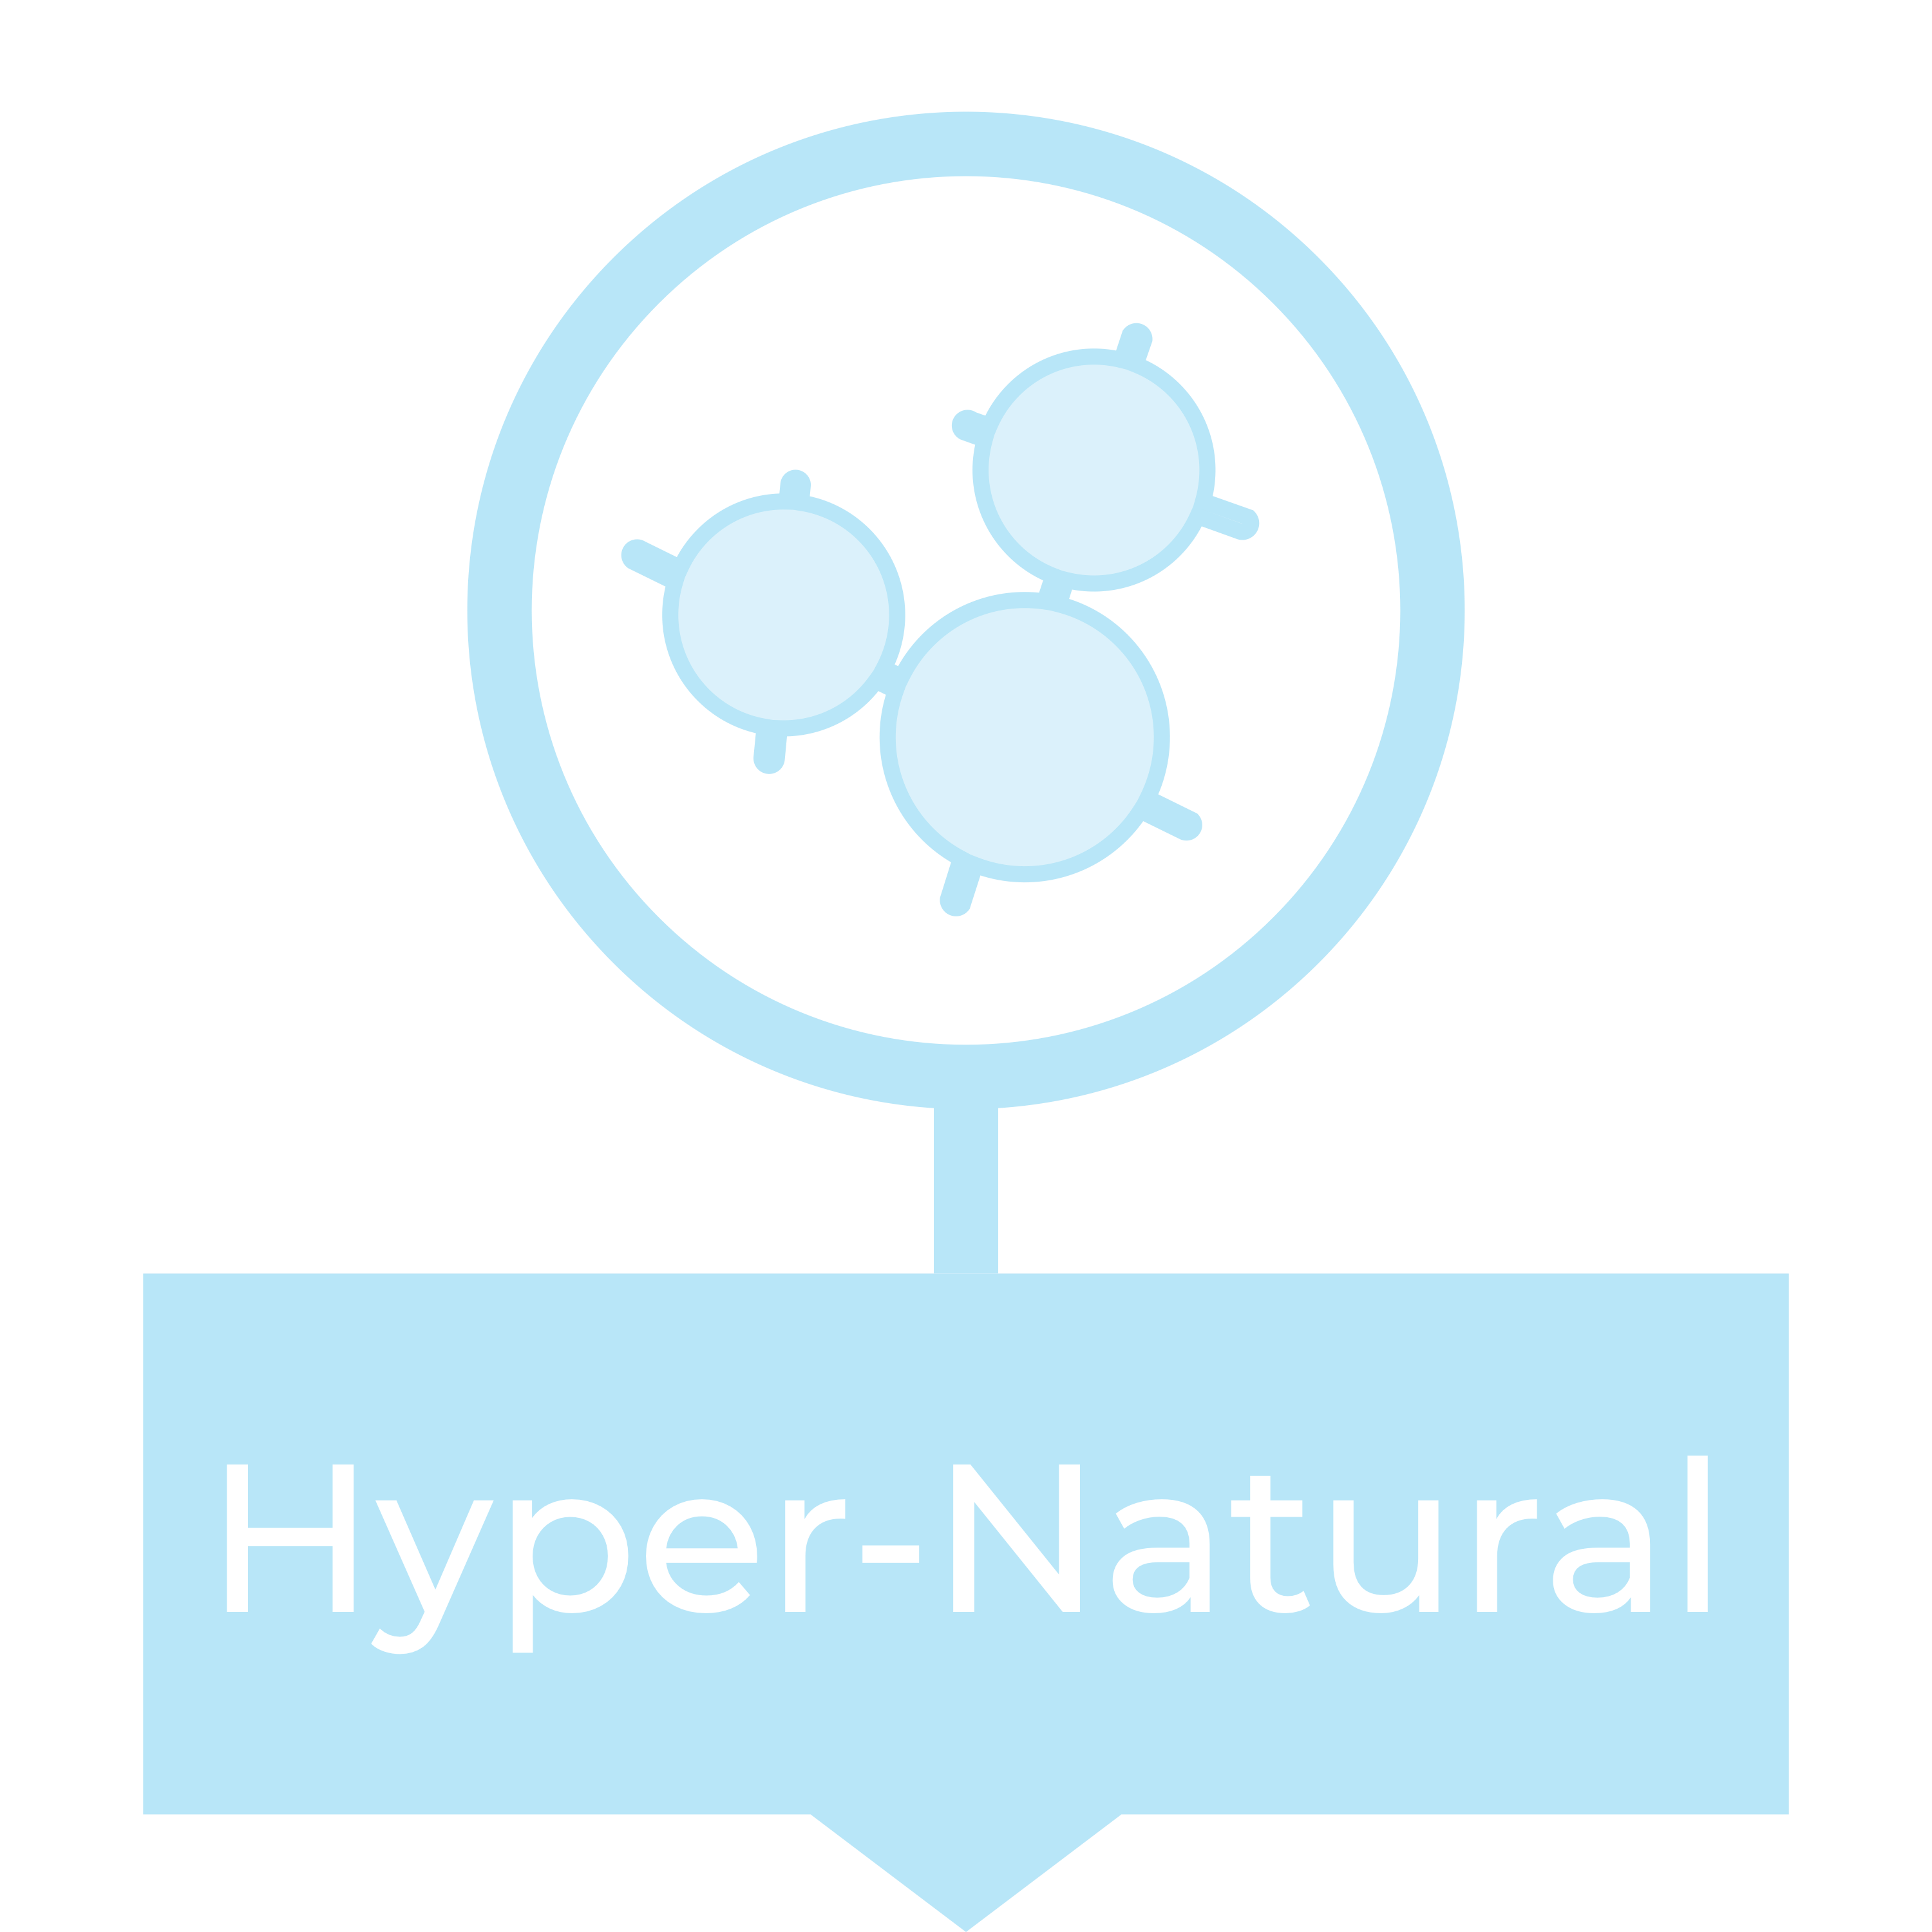 Hyper-Natural